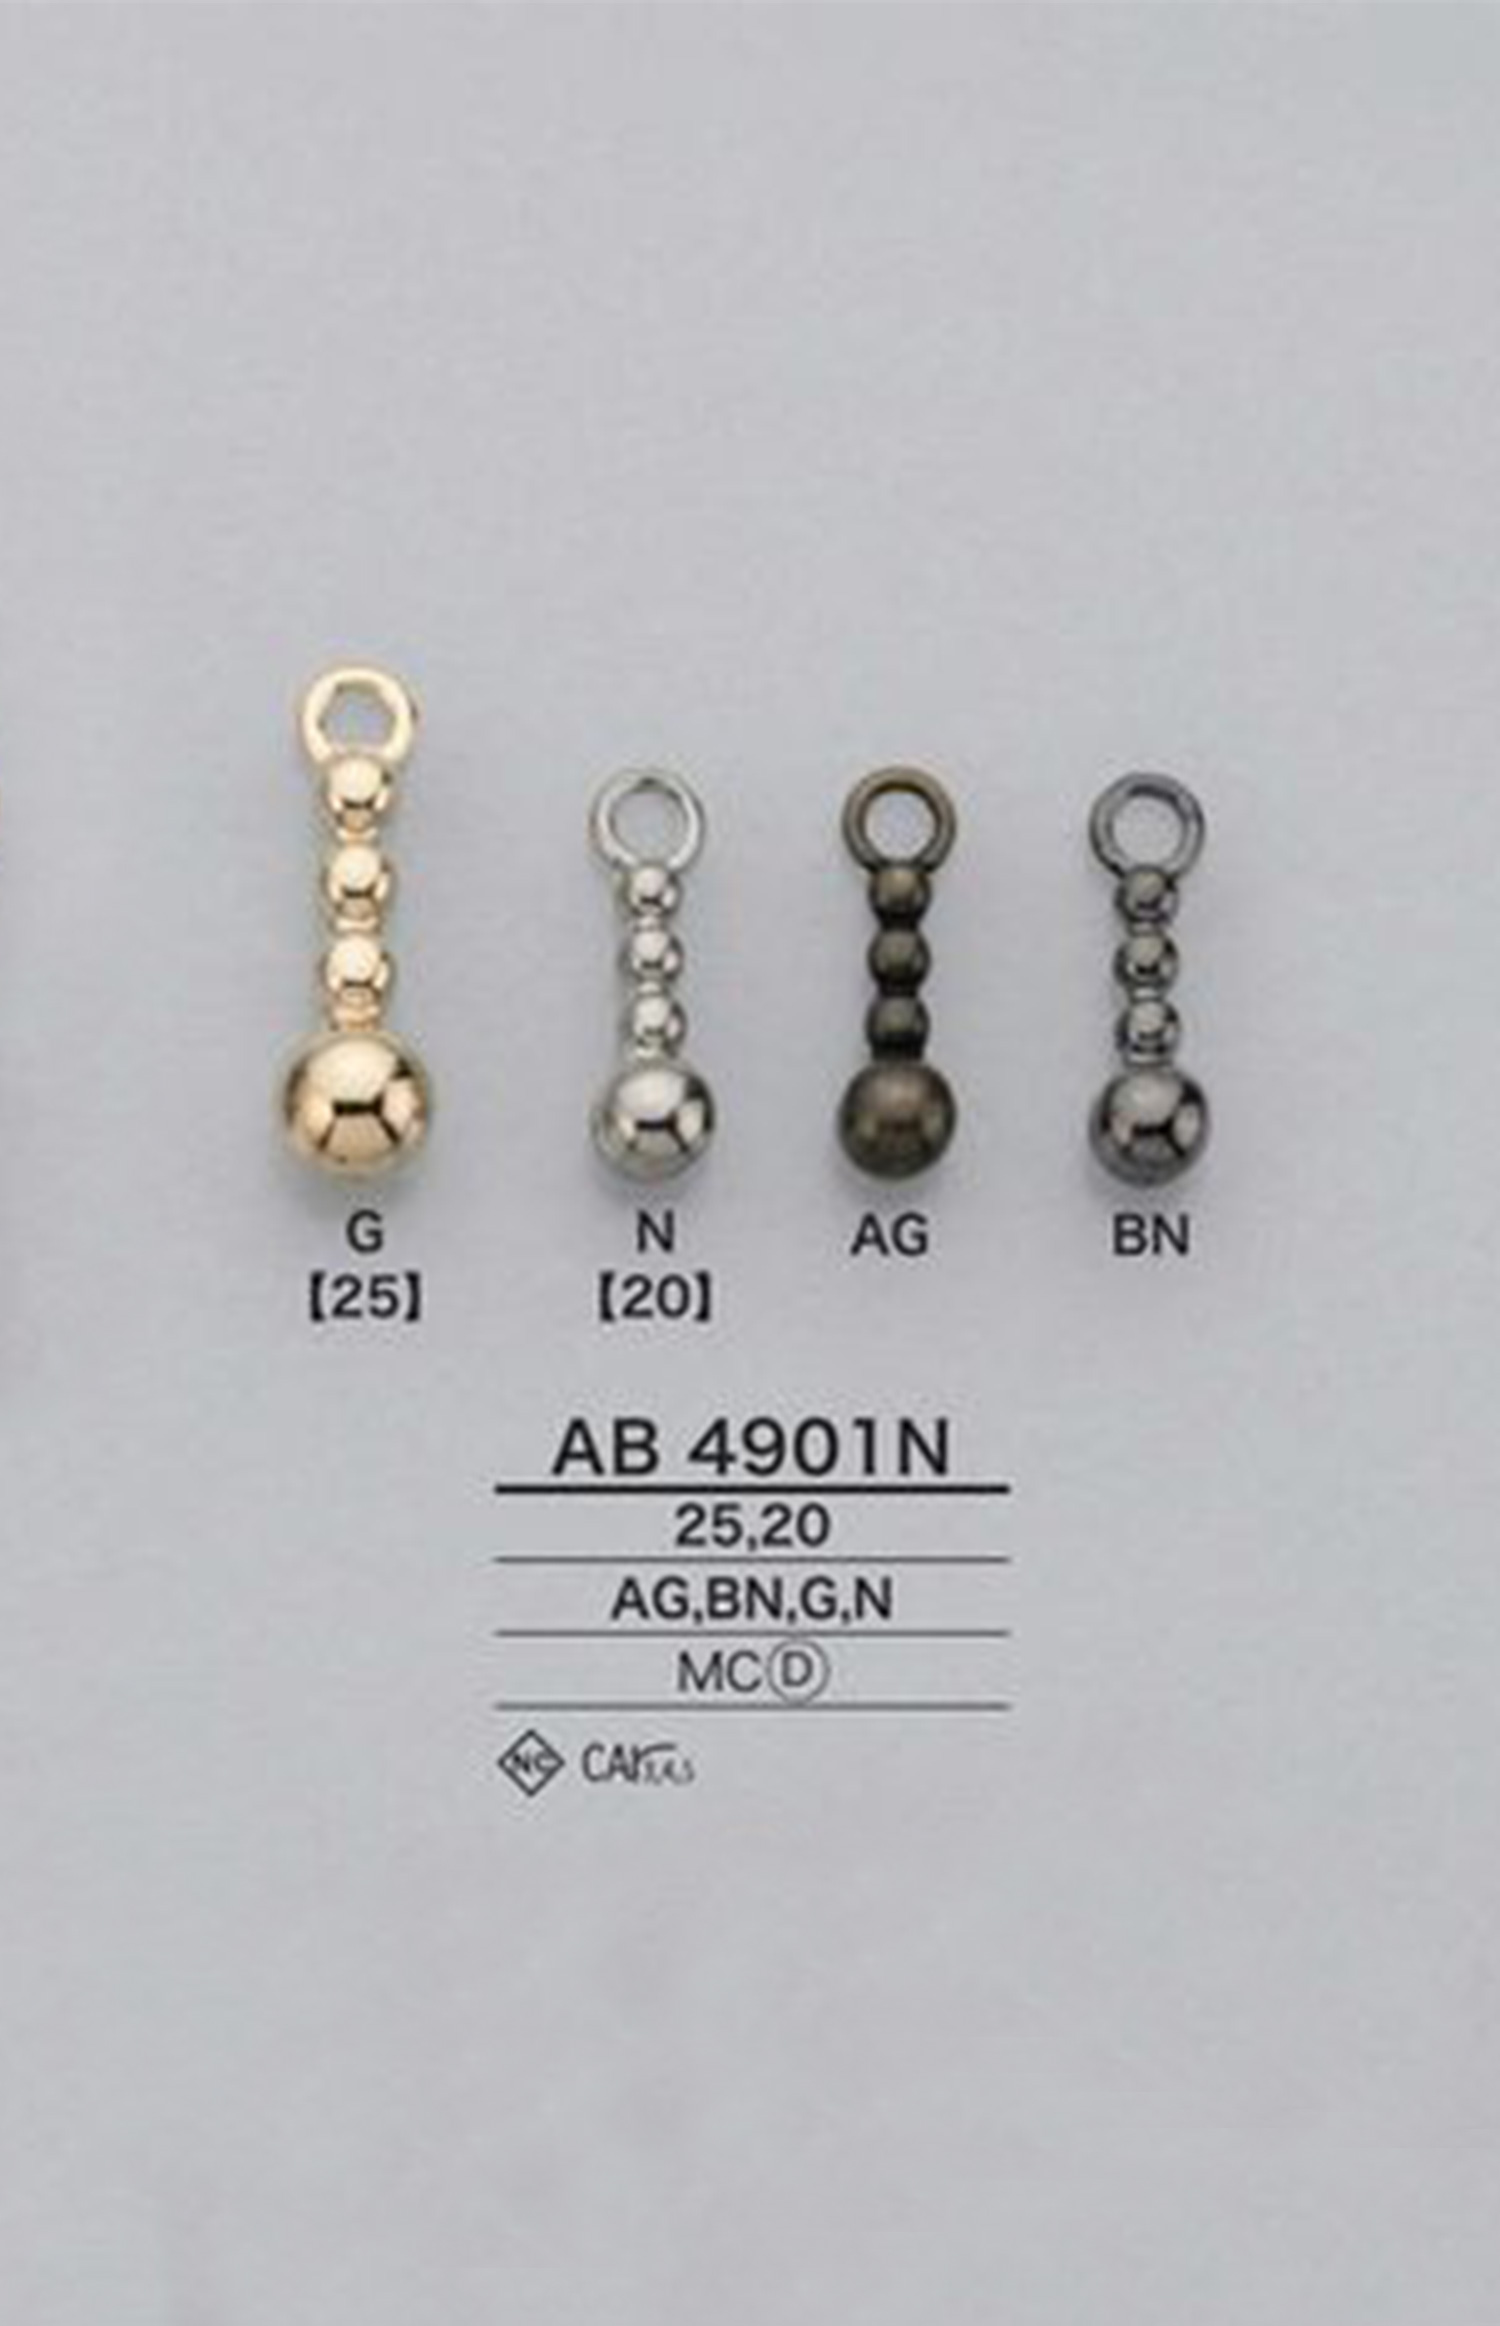 AB4901N Ball Chain Zipper Point (Pull Tab) IRIS